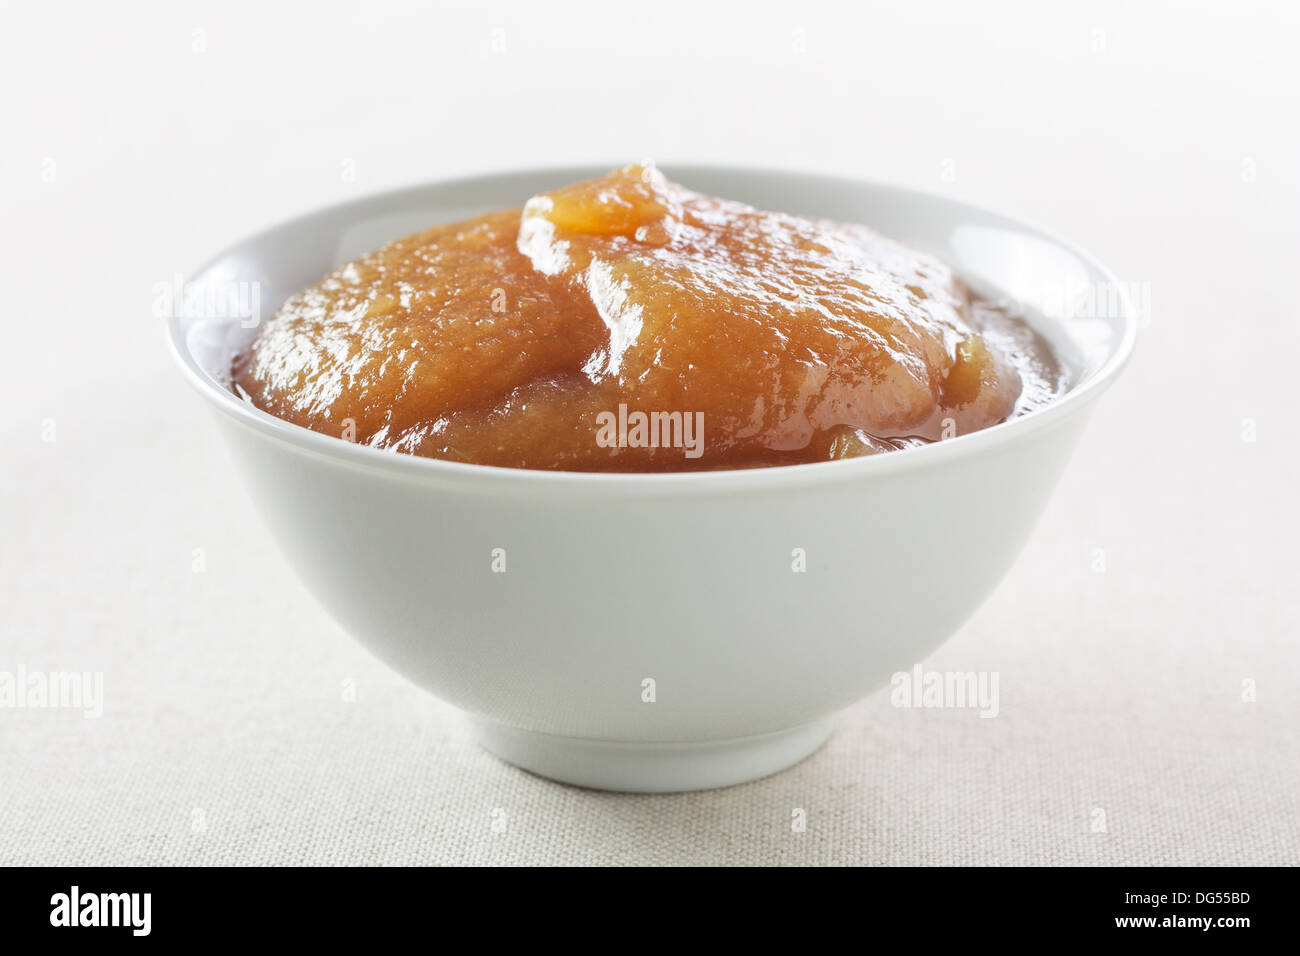 Bowl of homemade apple jam Stock Photo